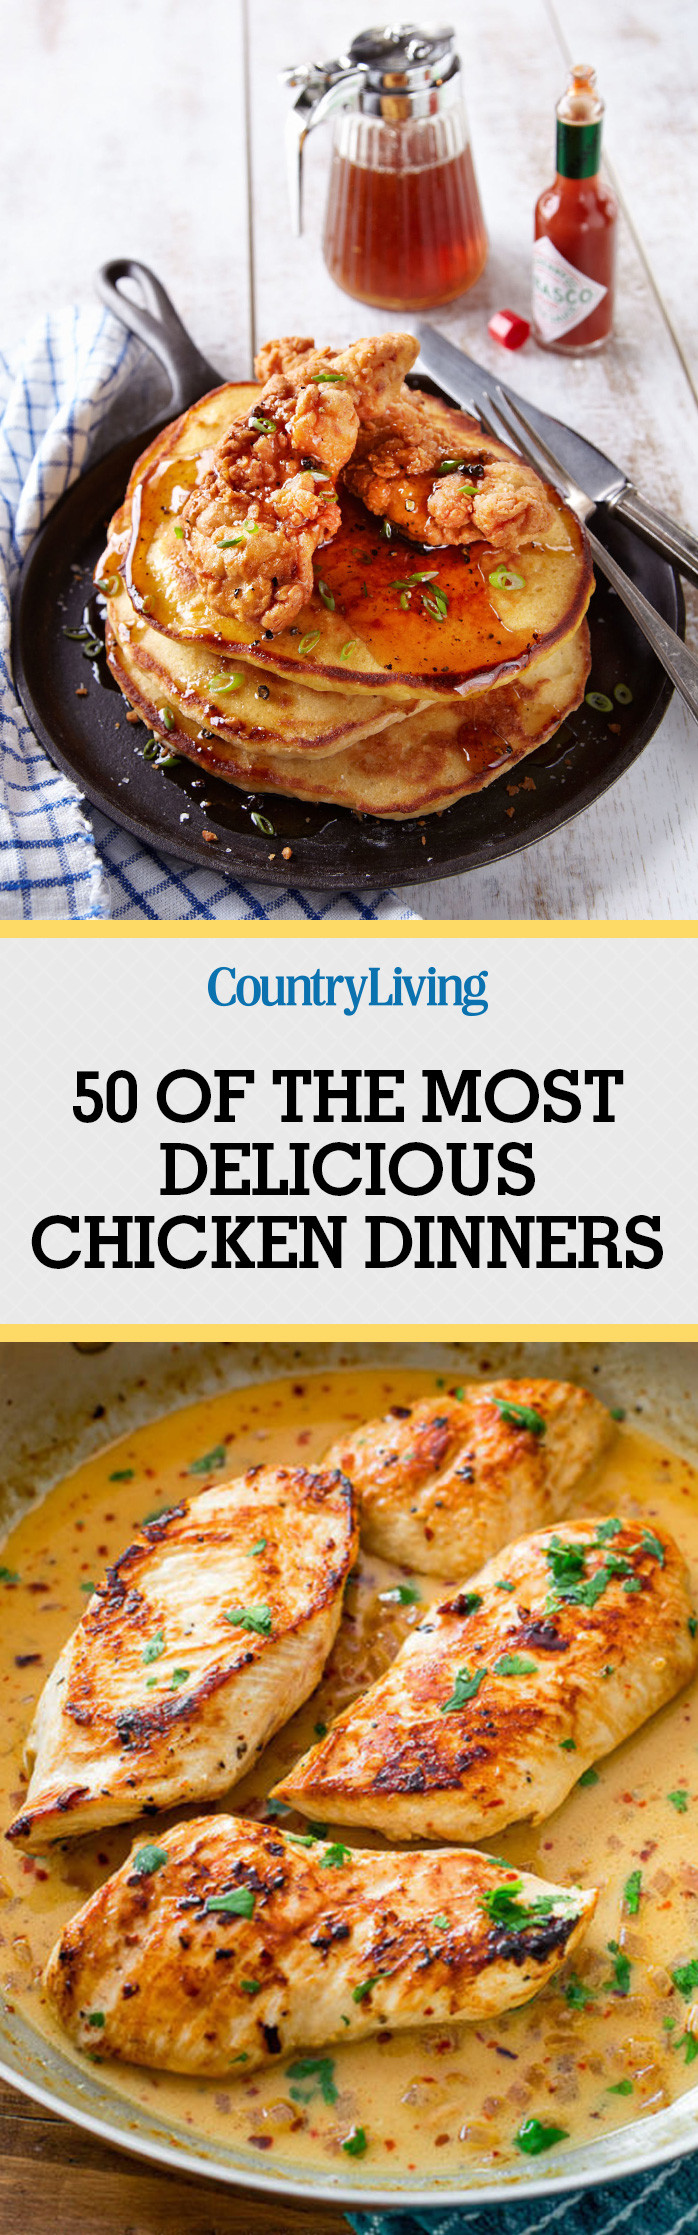 Best Chicken Recipes For Dinner
 85 Best Chicken Dinner Recipes 2017 Top Easy Chicken